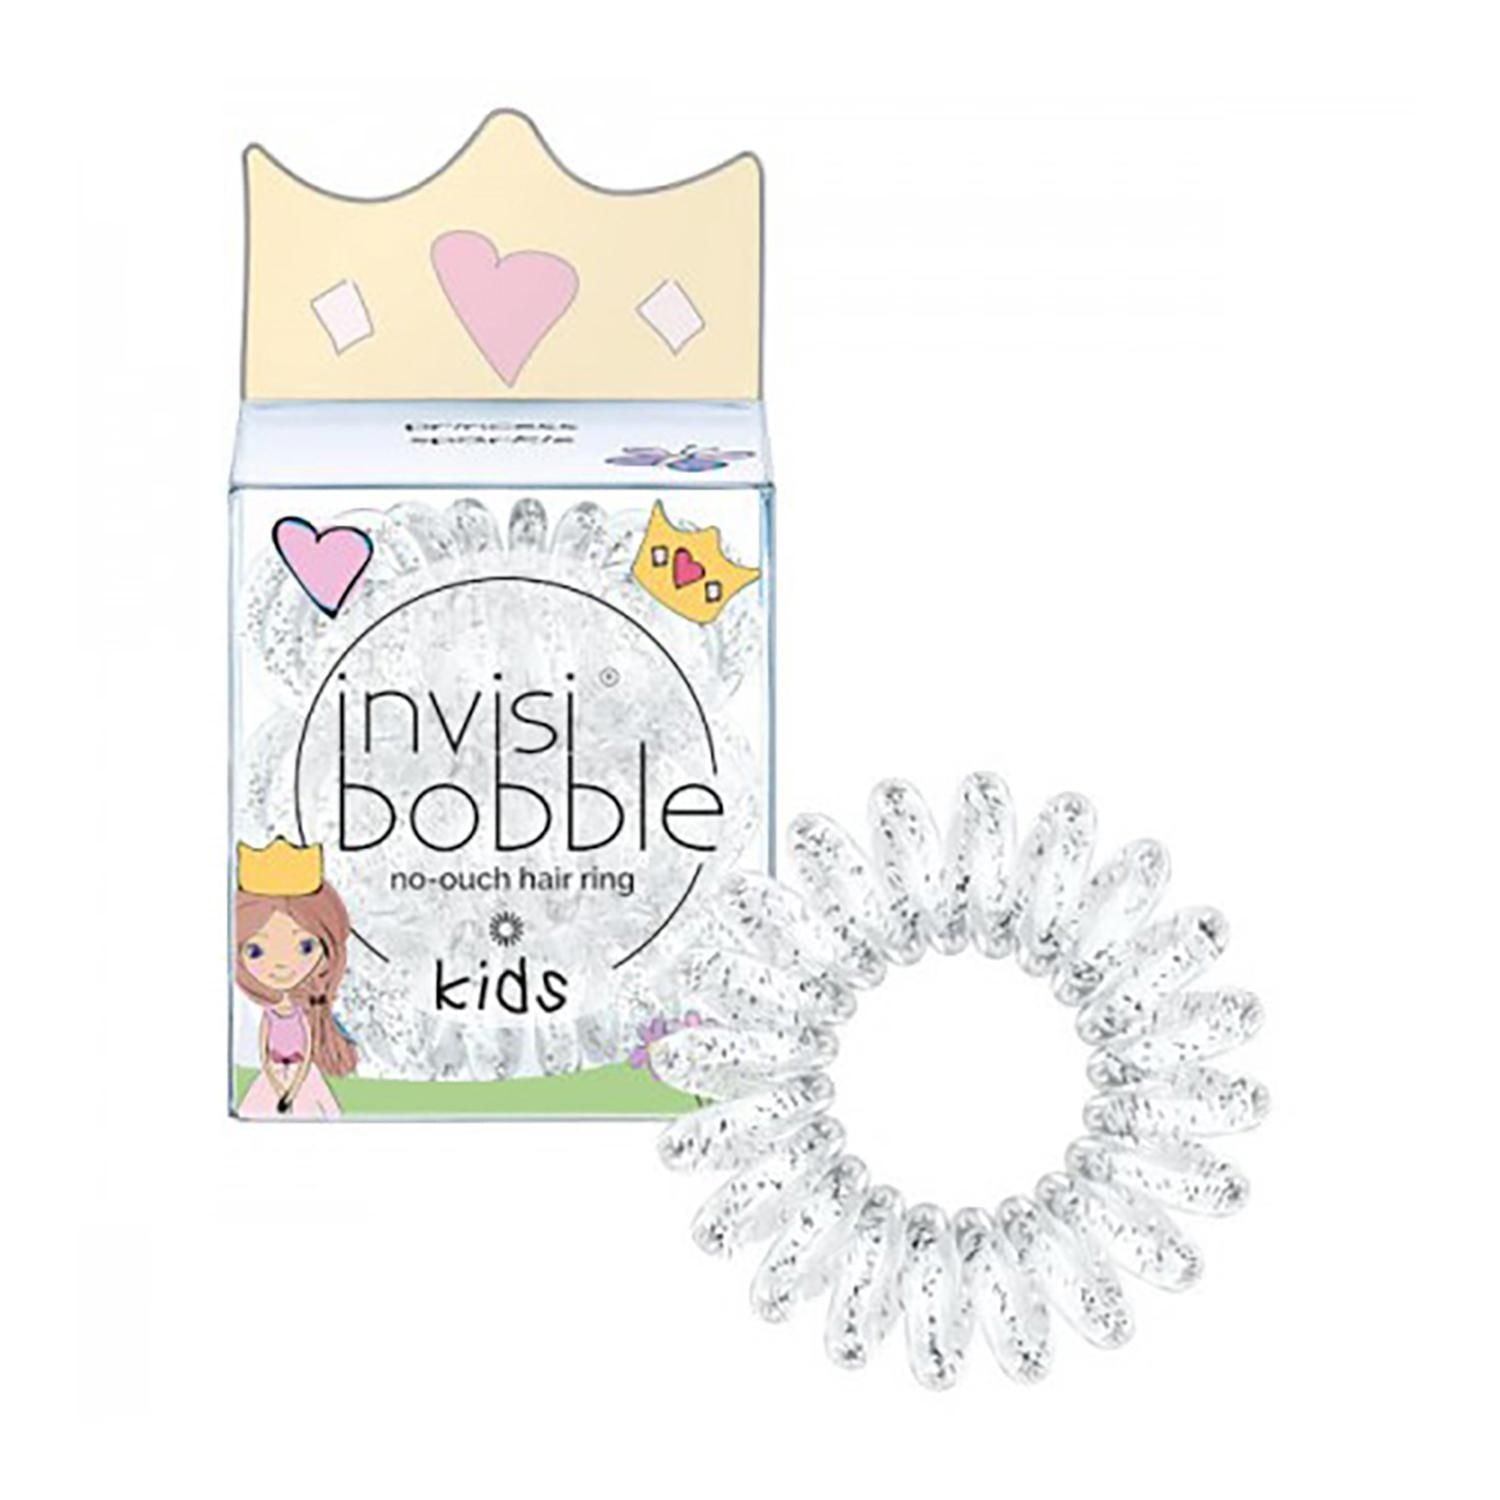 invisibobble KIDS ORIGINAL Princess Sparkle (transparente c/ brilhantes)